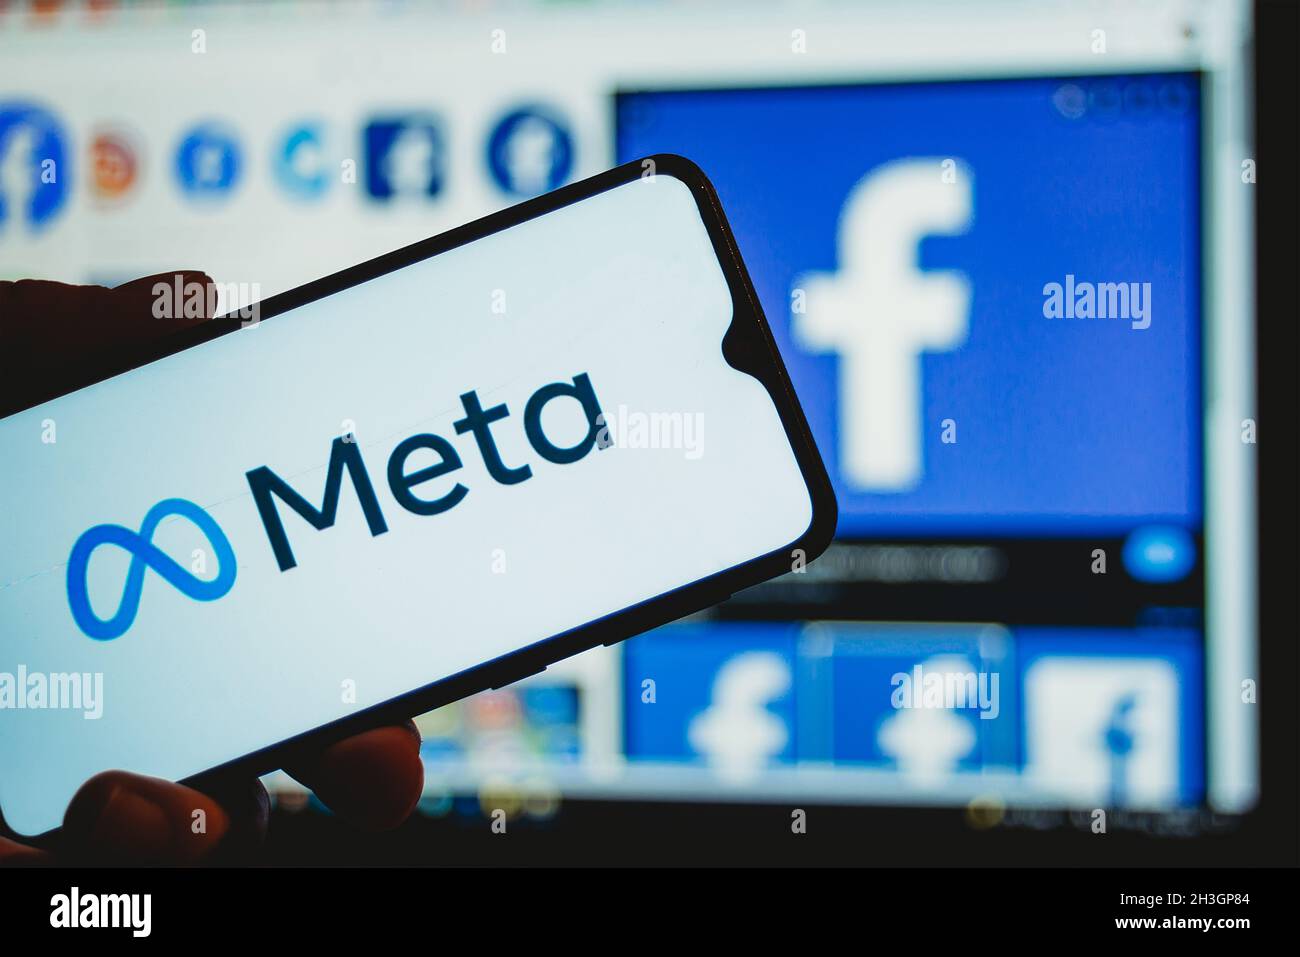 Sarajevo, Bosnie-Herzégovine - 10.29.2021: Facebook rebranding à nouveau nom et logo Meta sur le téléphone mobile Banque D'Images